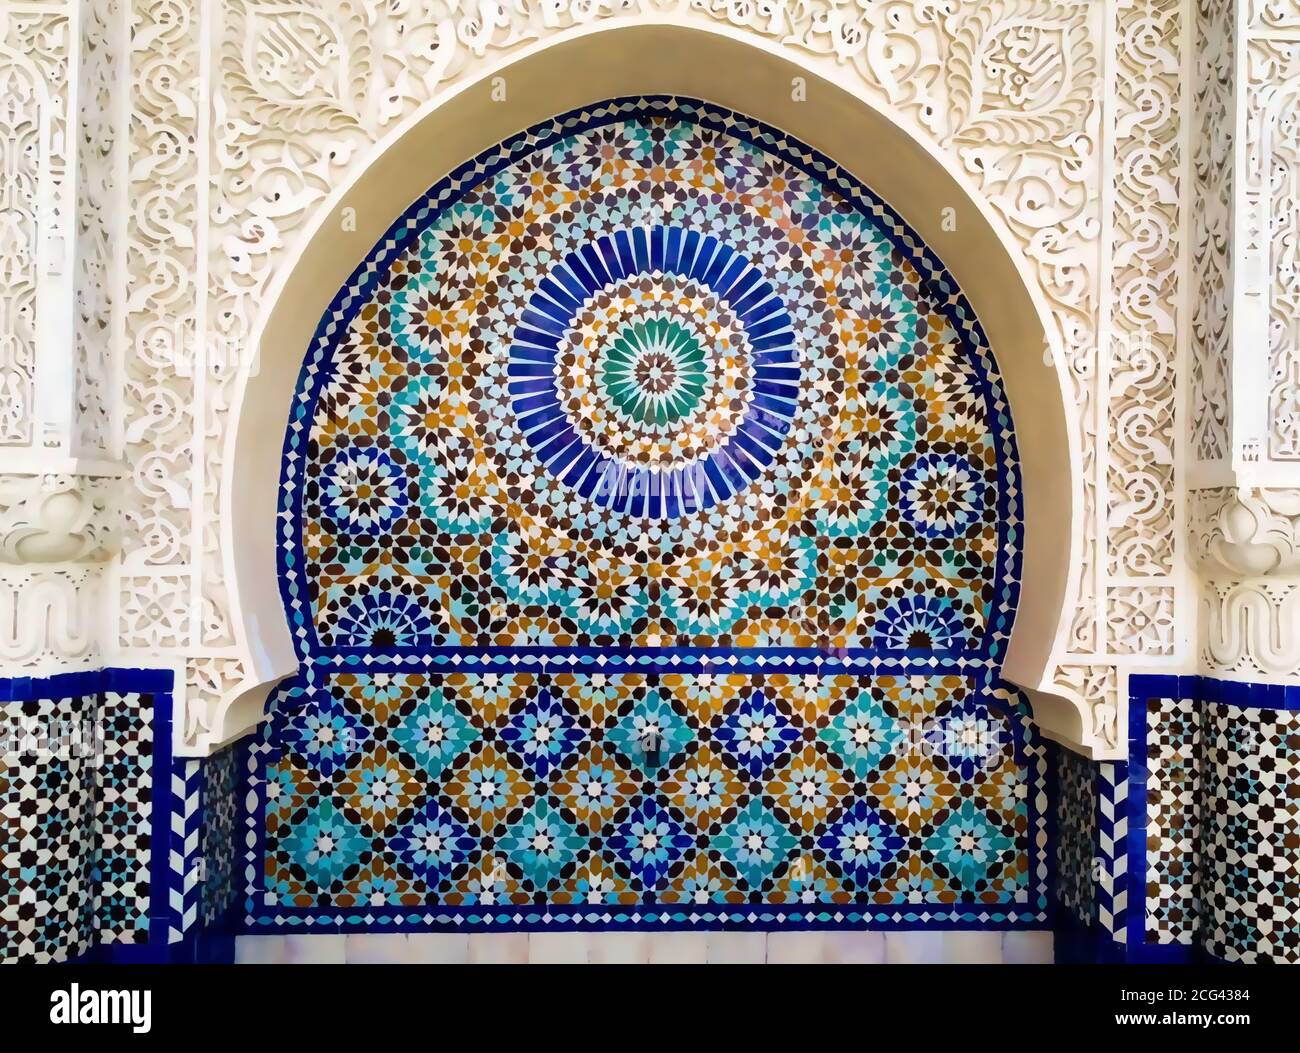 traditionell islamisch Design. Illustration von Blumen- islamisch  geometrisch Dekoration. Marokko nahtlos Grenze. Moschee Dekoration Element.  25945837 Vektor Kunst bei Vecteezy